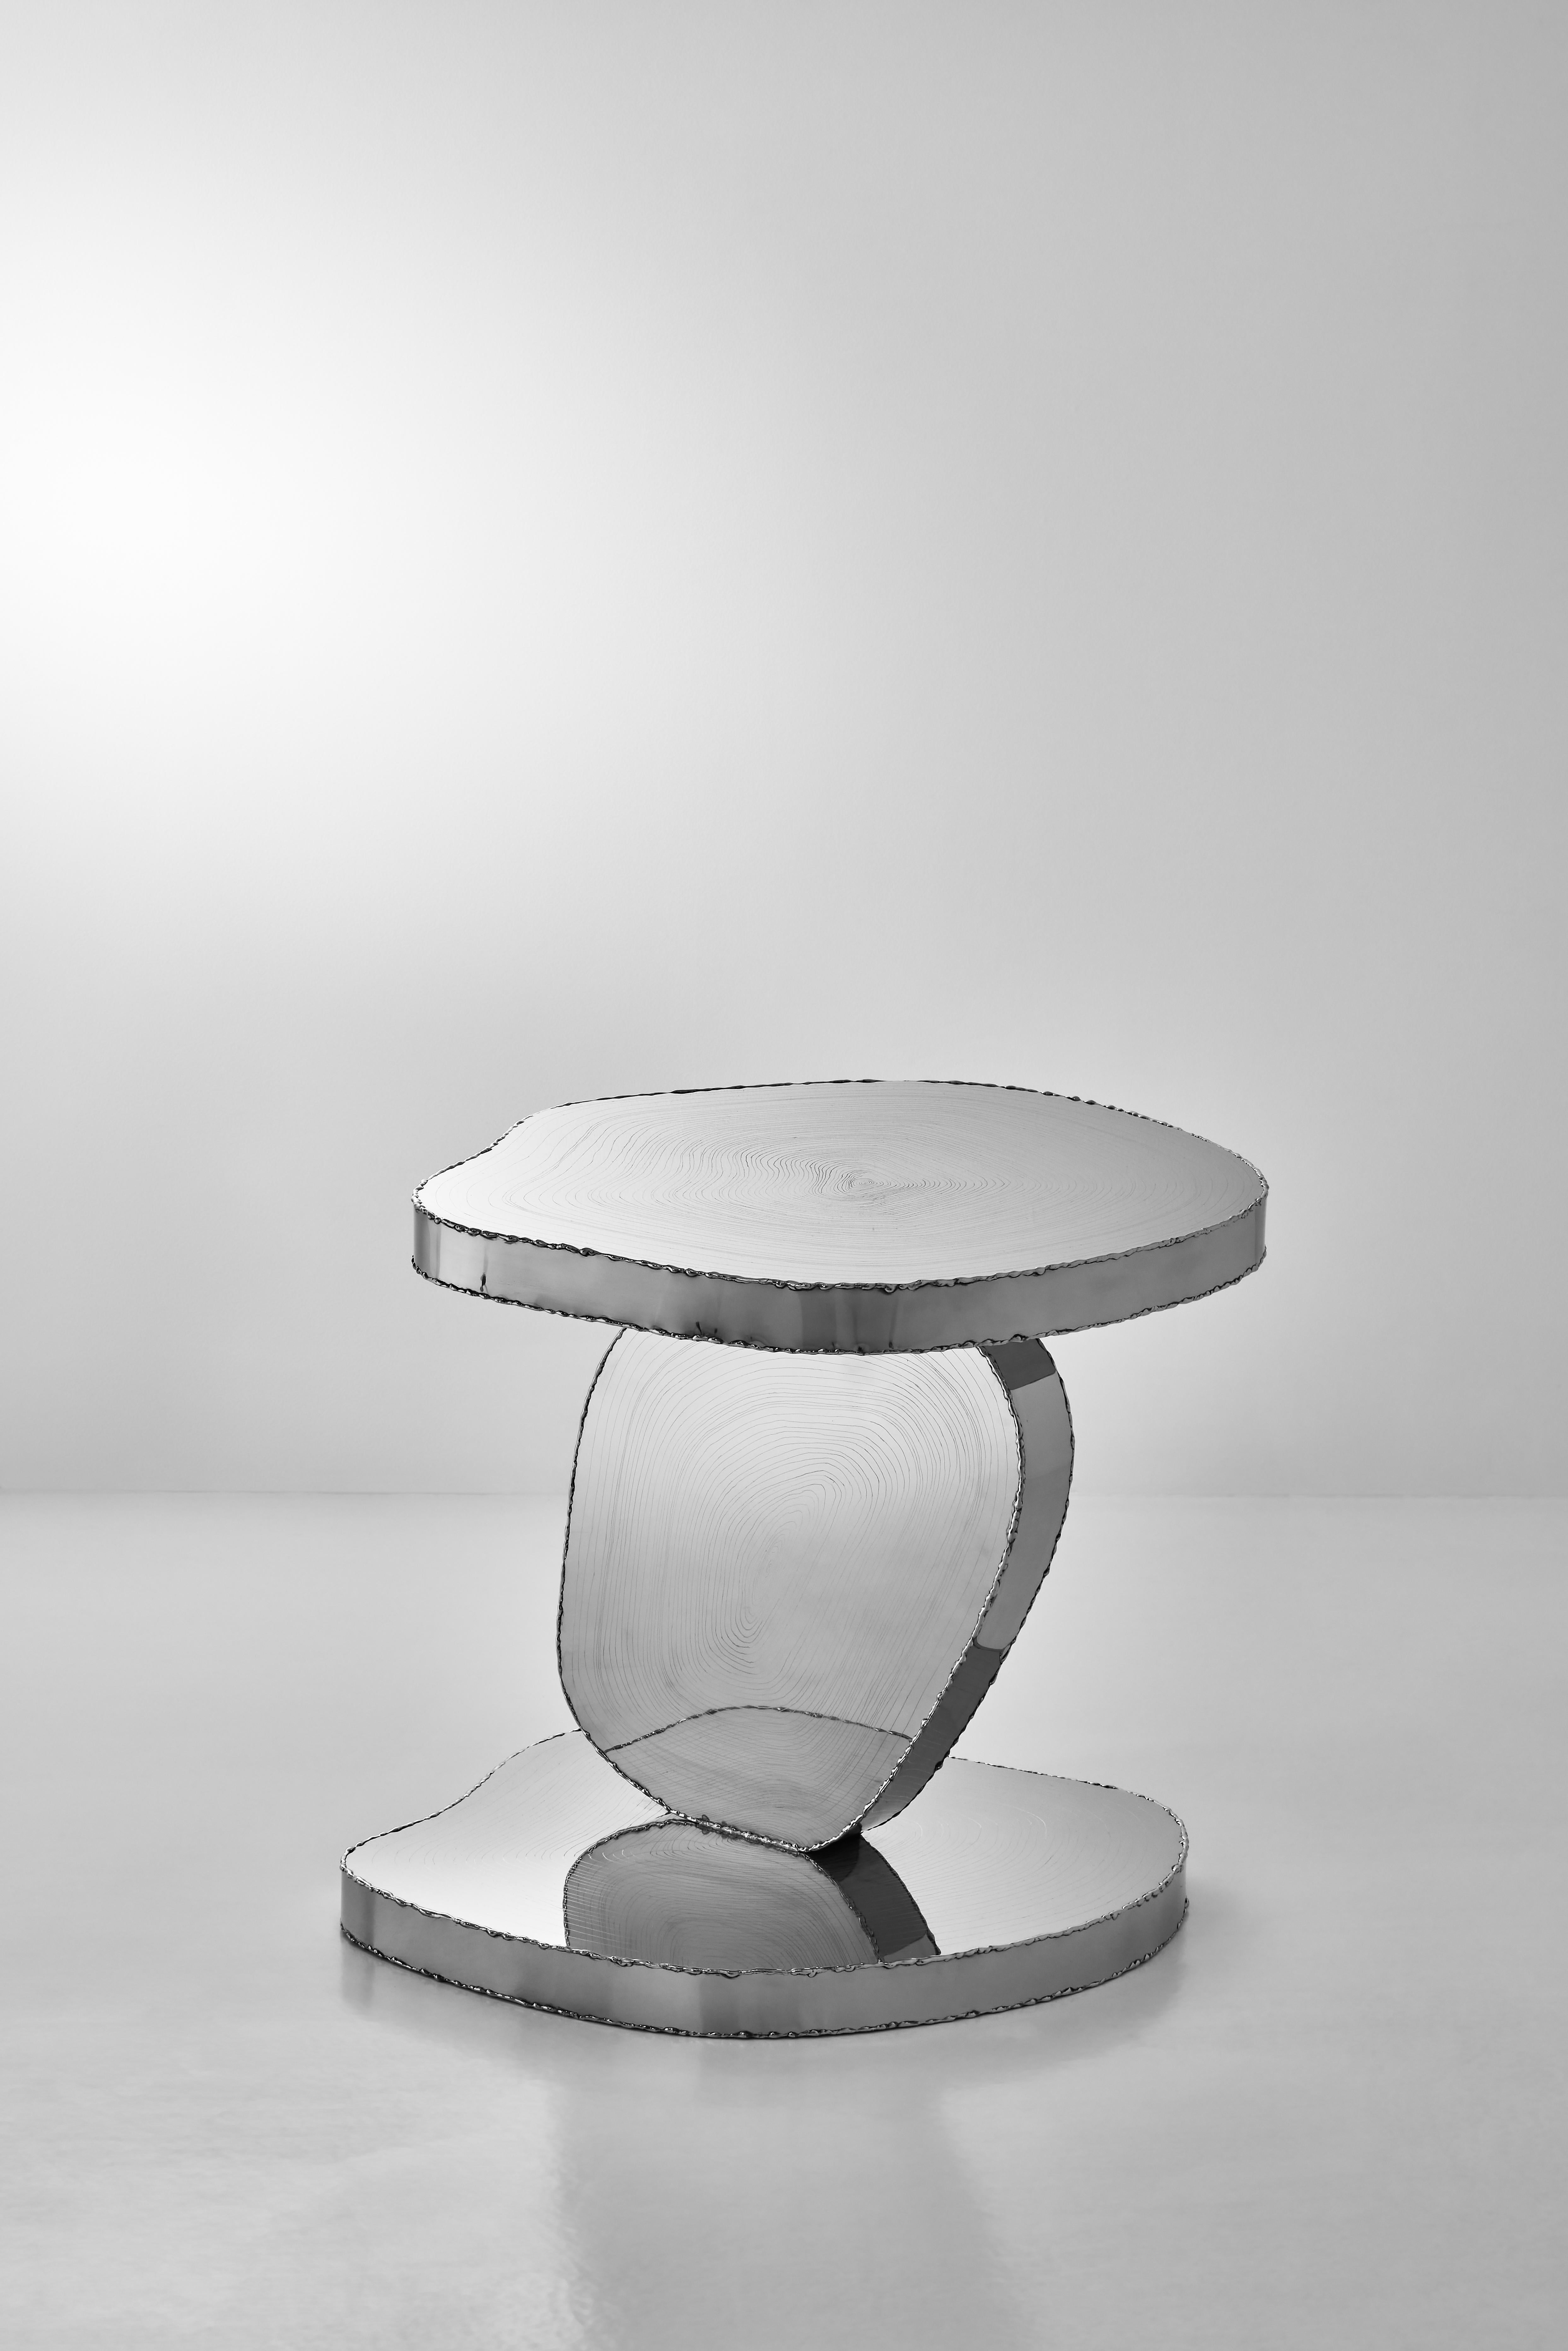 Wood Stack Side Table by Hyungjun Lee
Dimensions: D 48 x W 49 x H 46 cm.
Materials: Stainless steel.


Hyungjun Lee

EDUCATION
2015-2018     ESAD Orléans / Objet & Espace
                      École supérieure d'art de design d’Orléans /